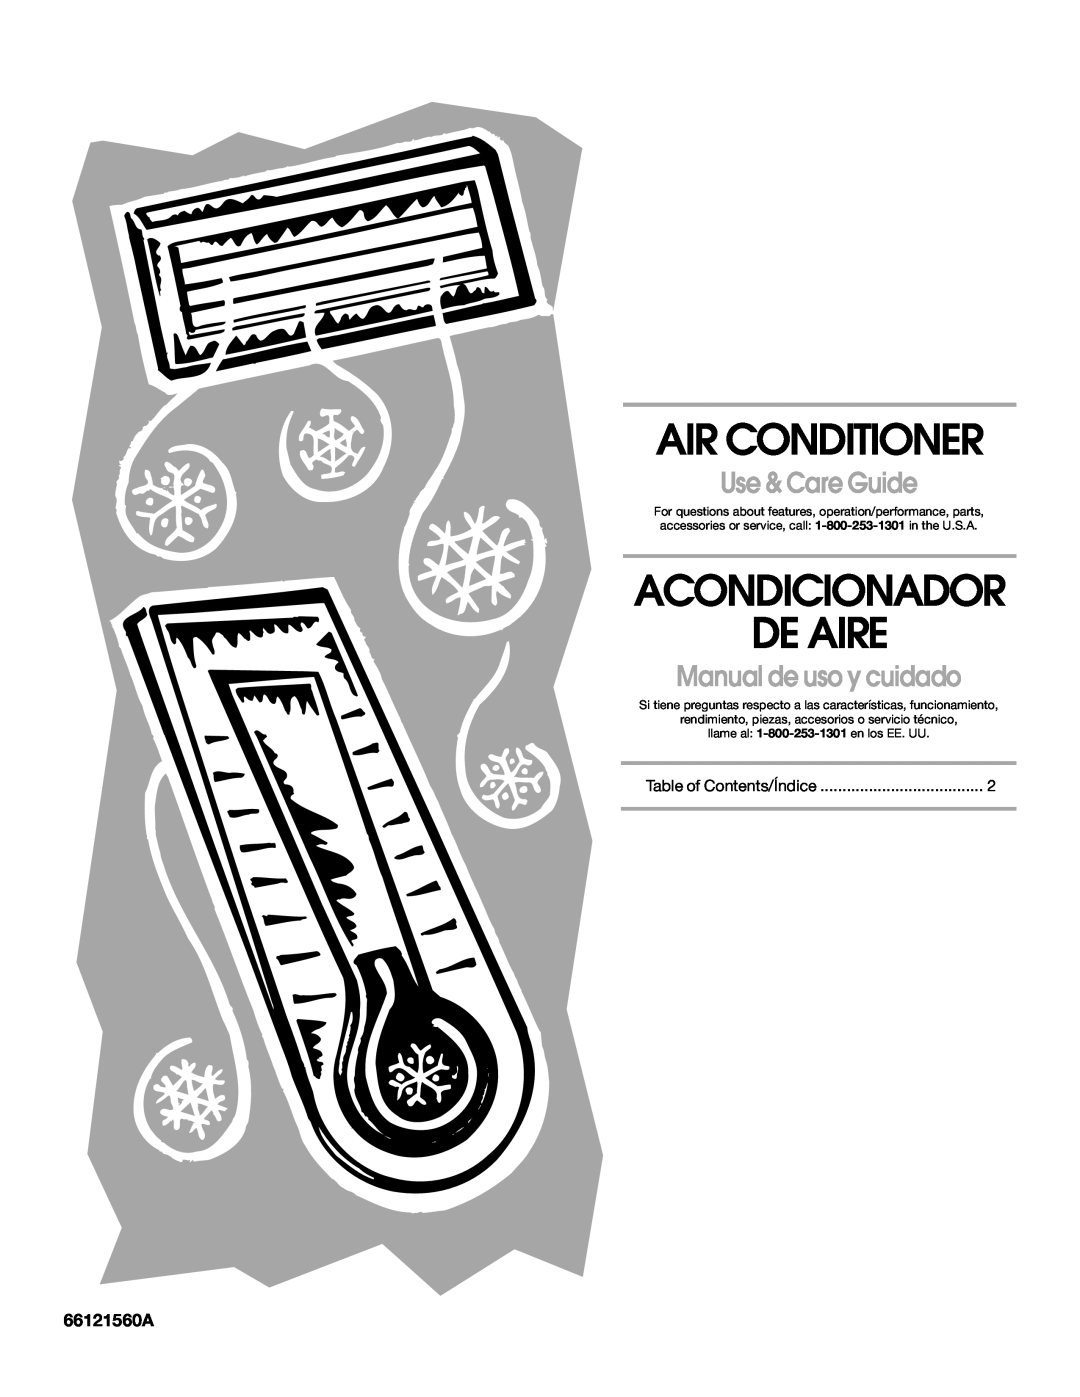 Whirlpool ACE184PT0 manual 66121560A, Air Conditioner, Acondicionador De Aire, Use & Care Guide, Manual de uso y cuidado 